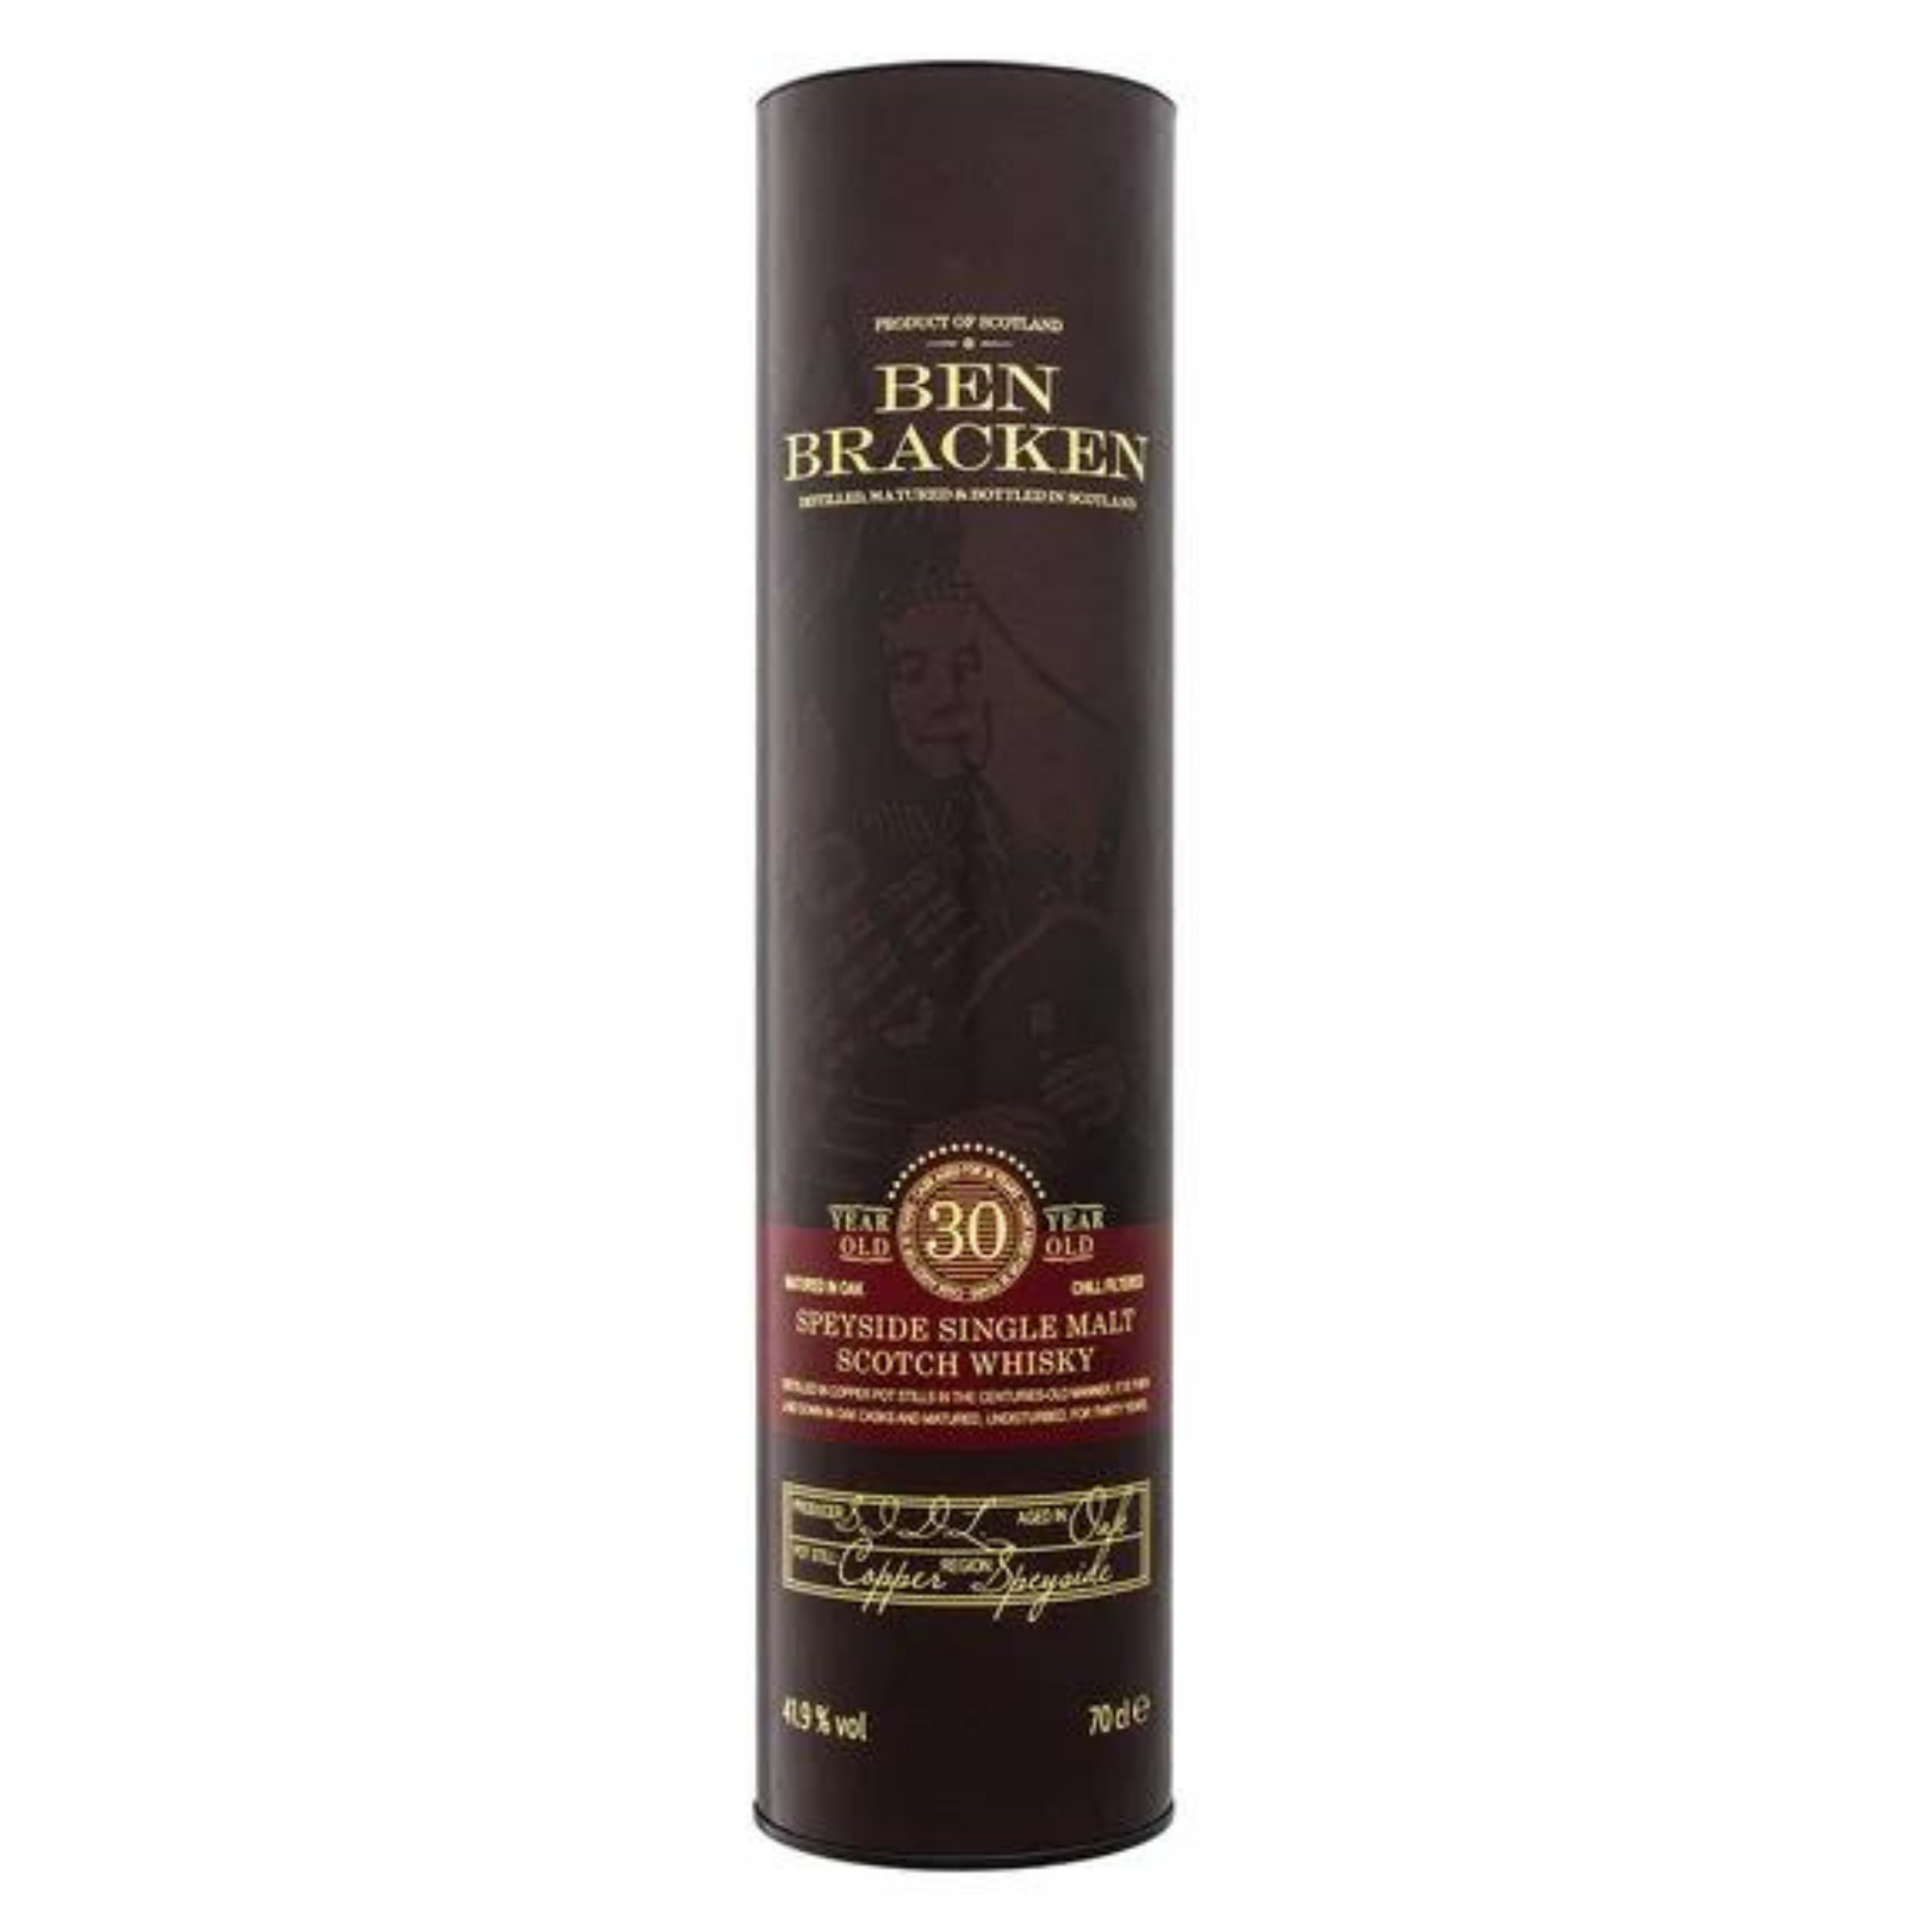 Ben Bracken Speyside Single Malt Scotch Whisky 30 Jahre 41,9% vol 0,7L –  Die Schnecke - Whisky & Spirituosen